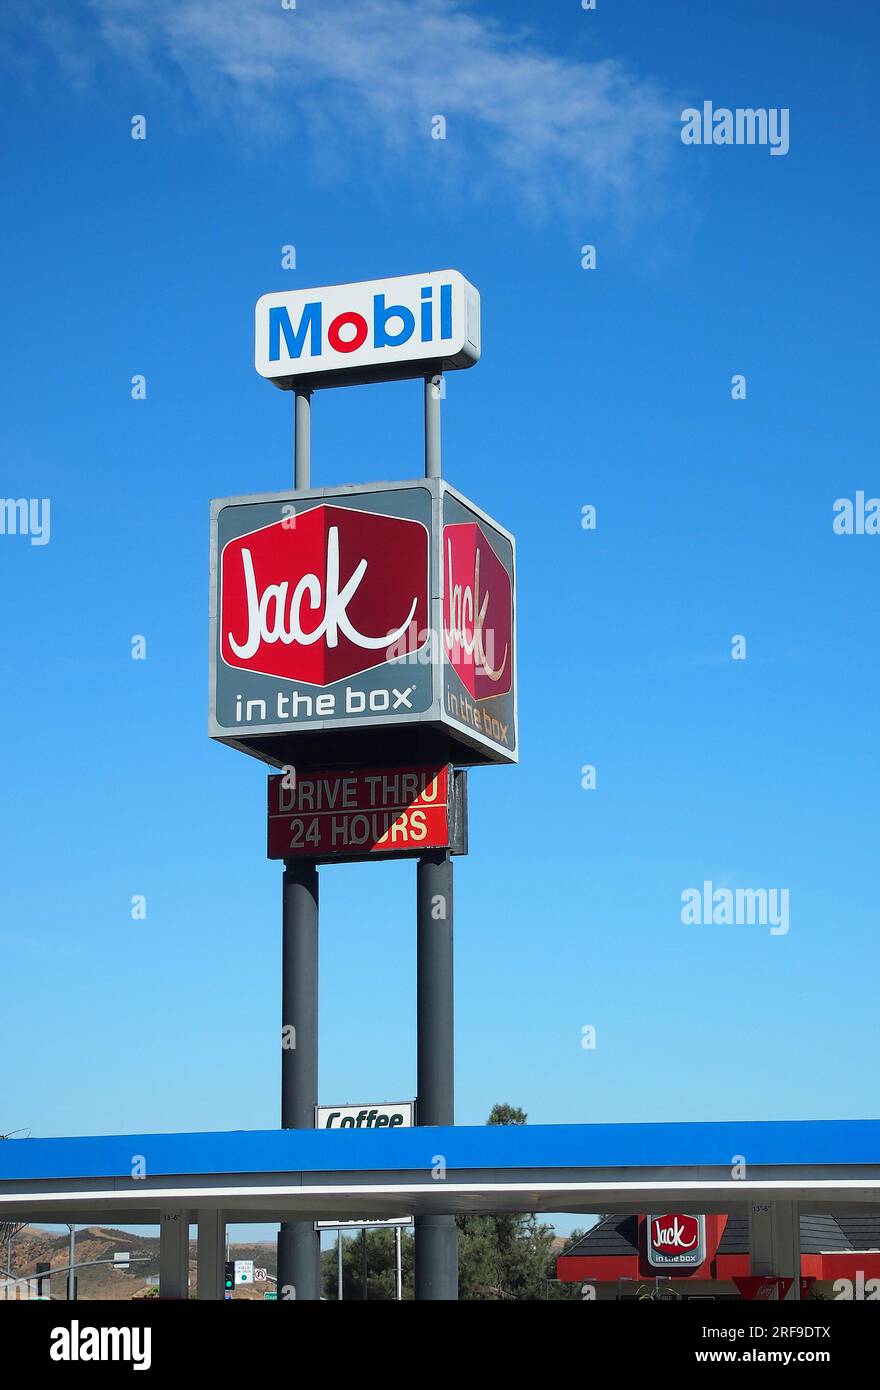 Il ristorante fast food Jack in the Box e le indicazioni per il distributore di benzina Mobil lungo una superstrada in California Foto Stock